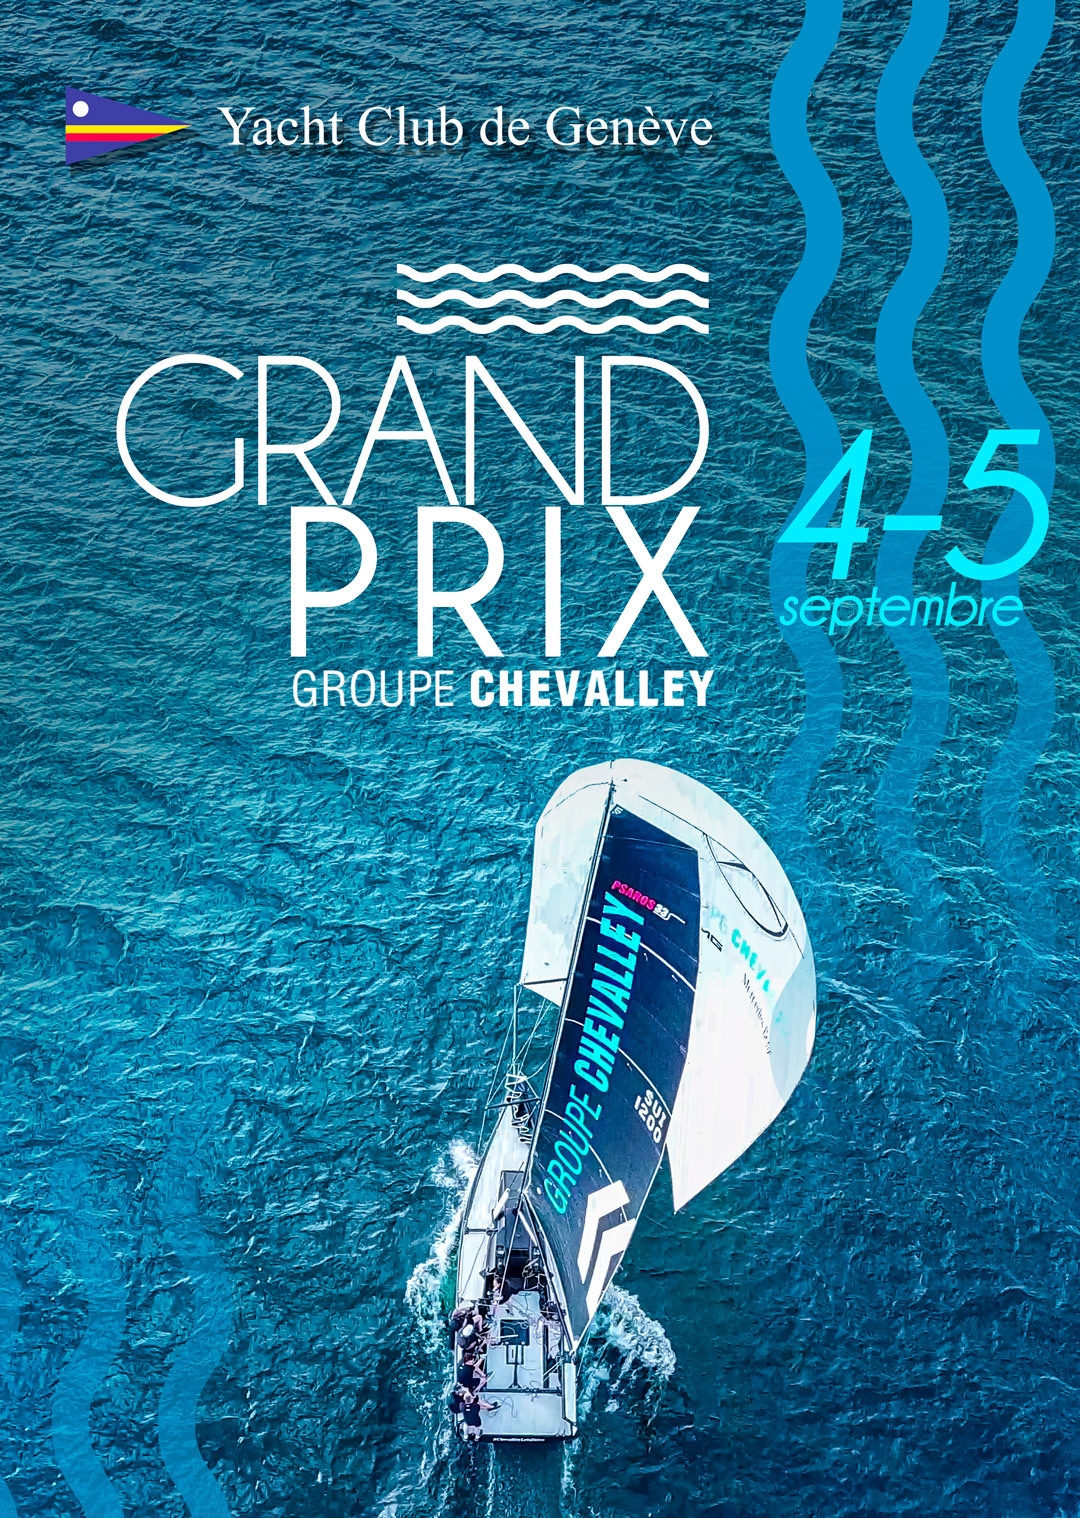  Psaros 33  Grand Prix Groupe Chevalley  YC Geneve